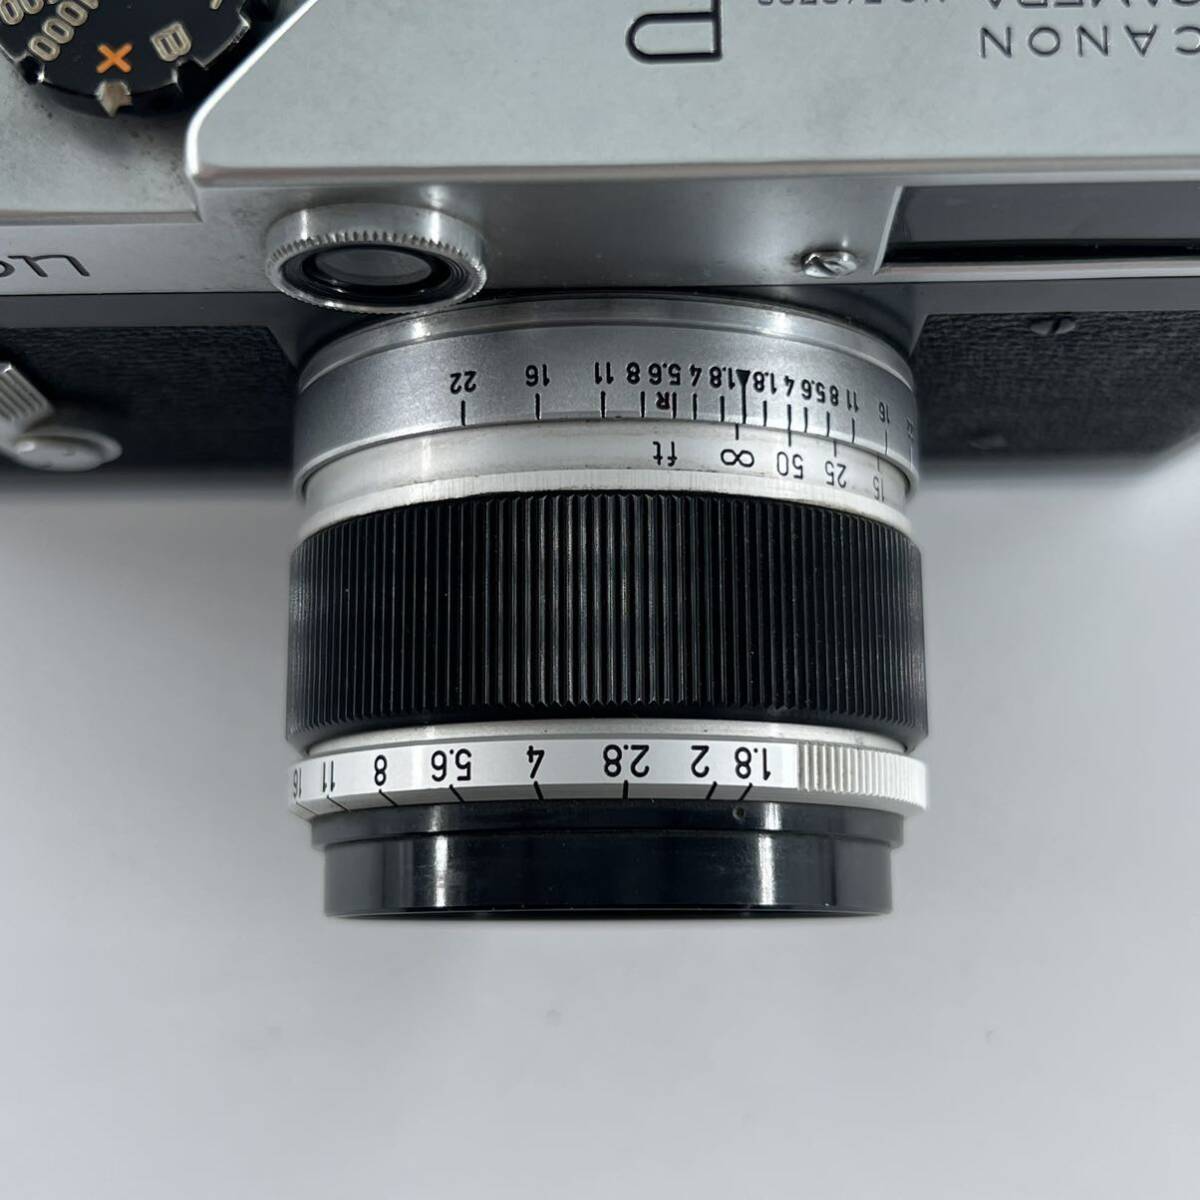 G4s Canon キャノン P 50mm f1.8 レンズセット カメラ フィルムカメラ シャッター音確認済み_画像7